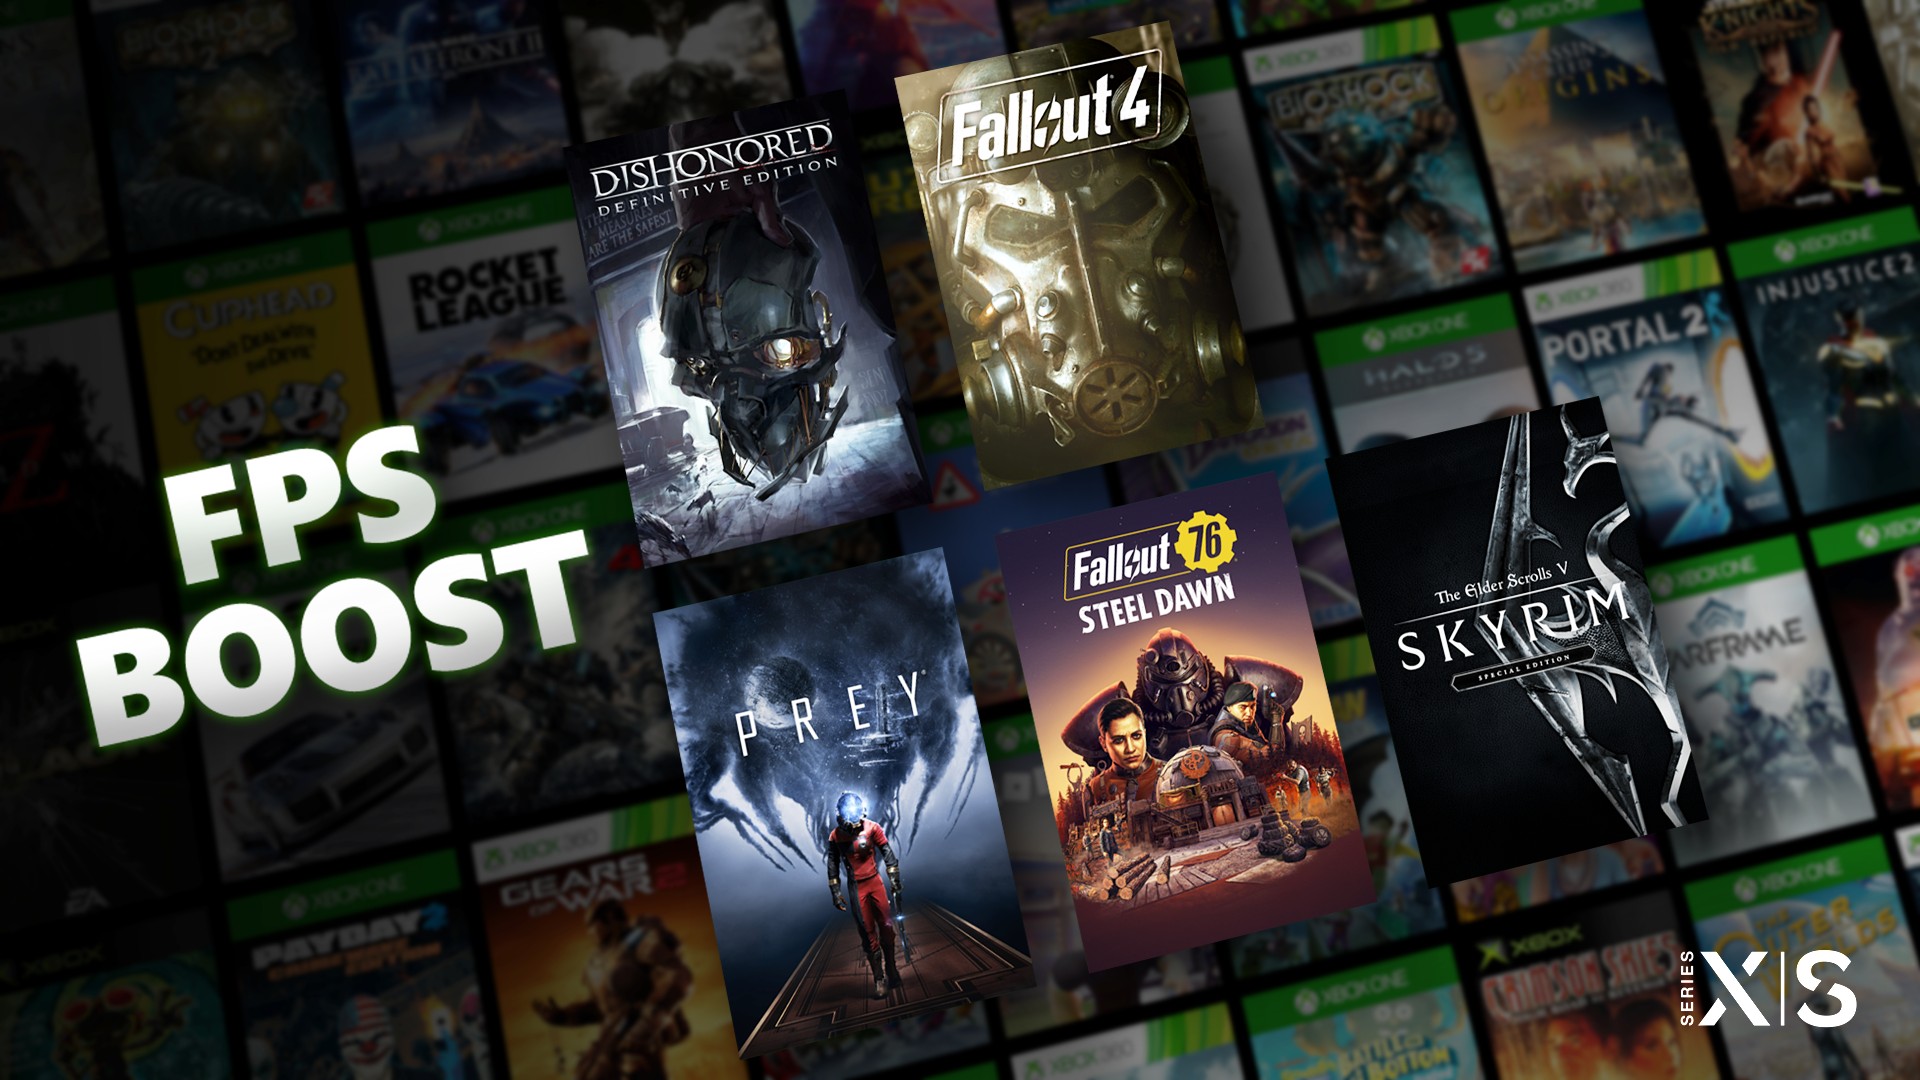 Spiele diese fünf fantastischen Bethesda-Games mit FPS Boost auf Xbox Series X|S: HERO